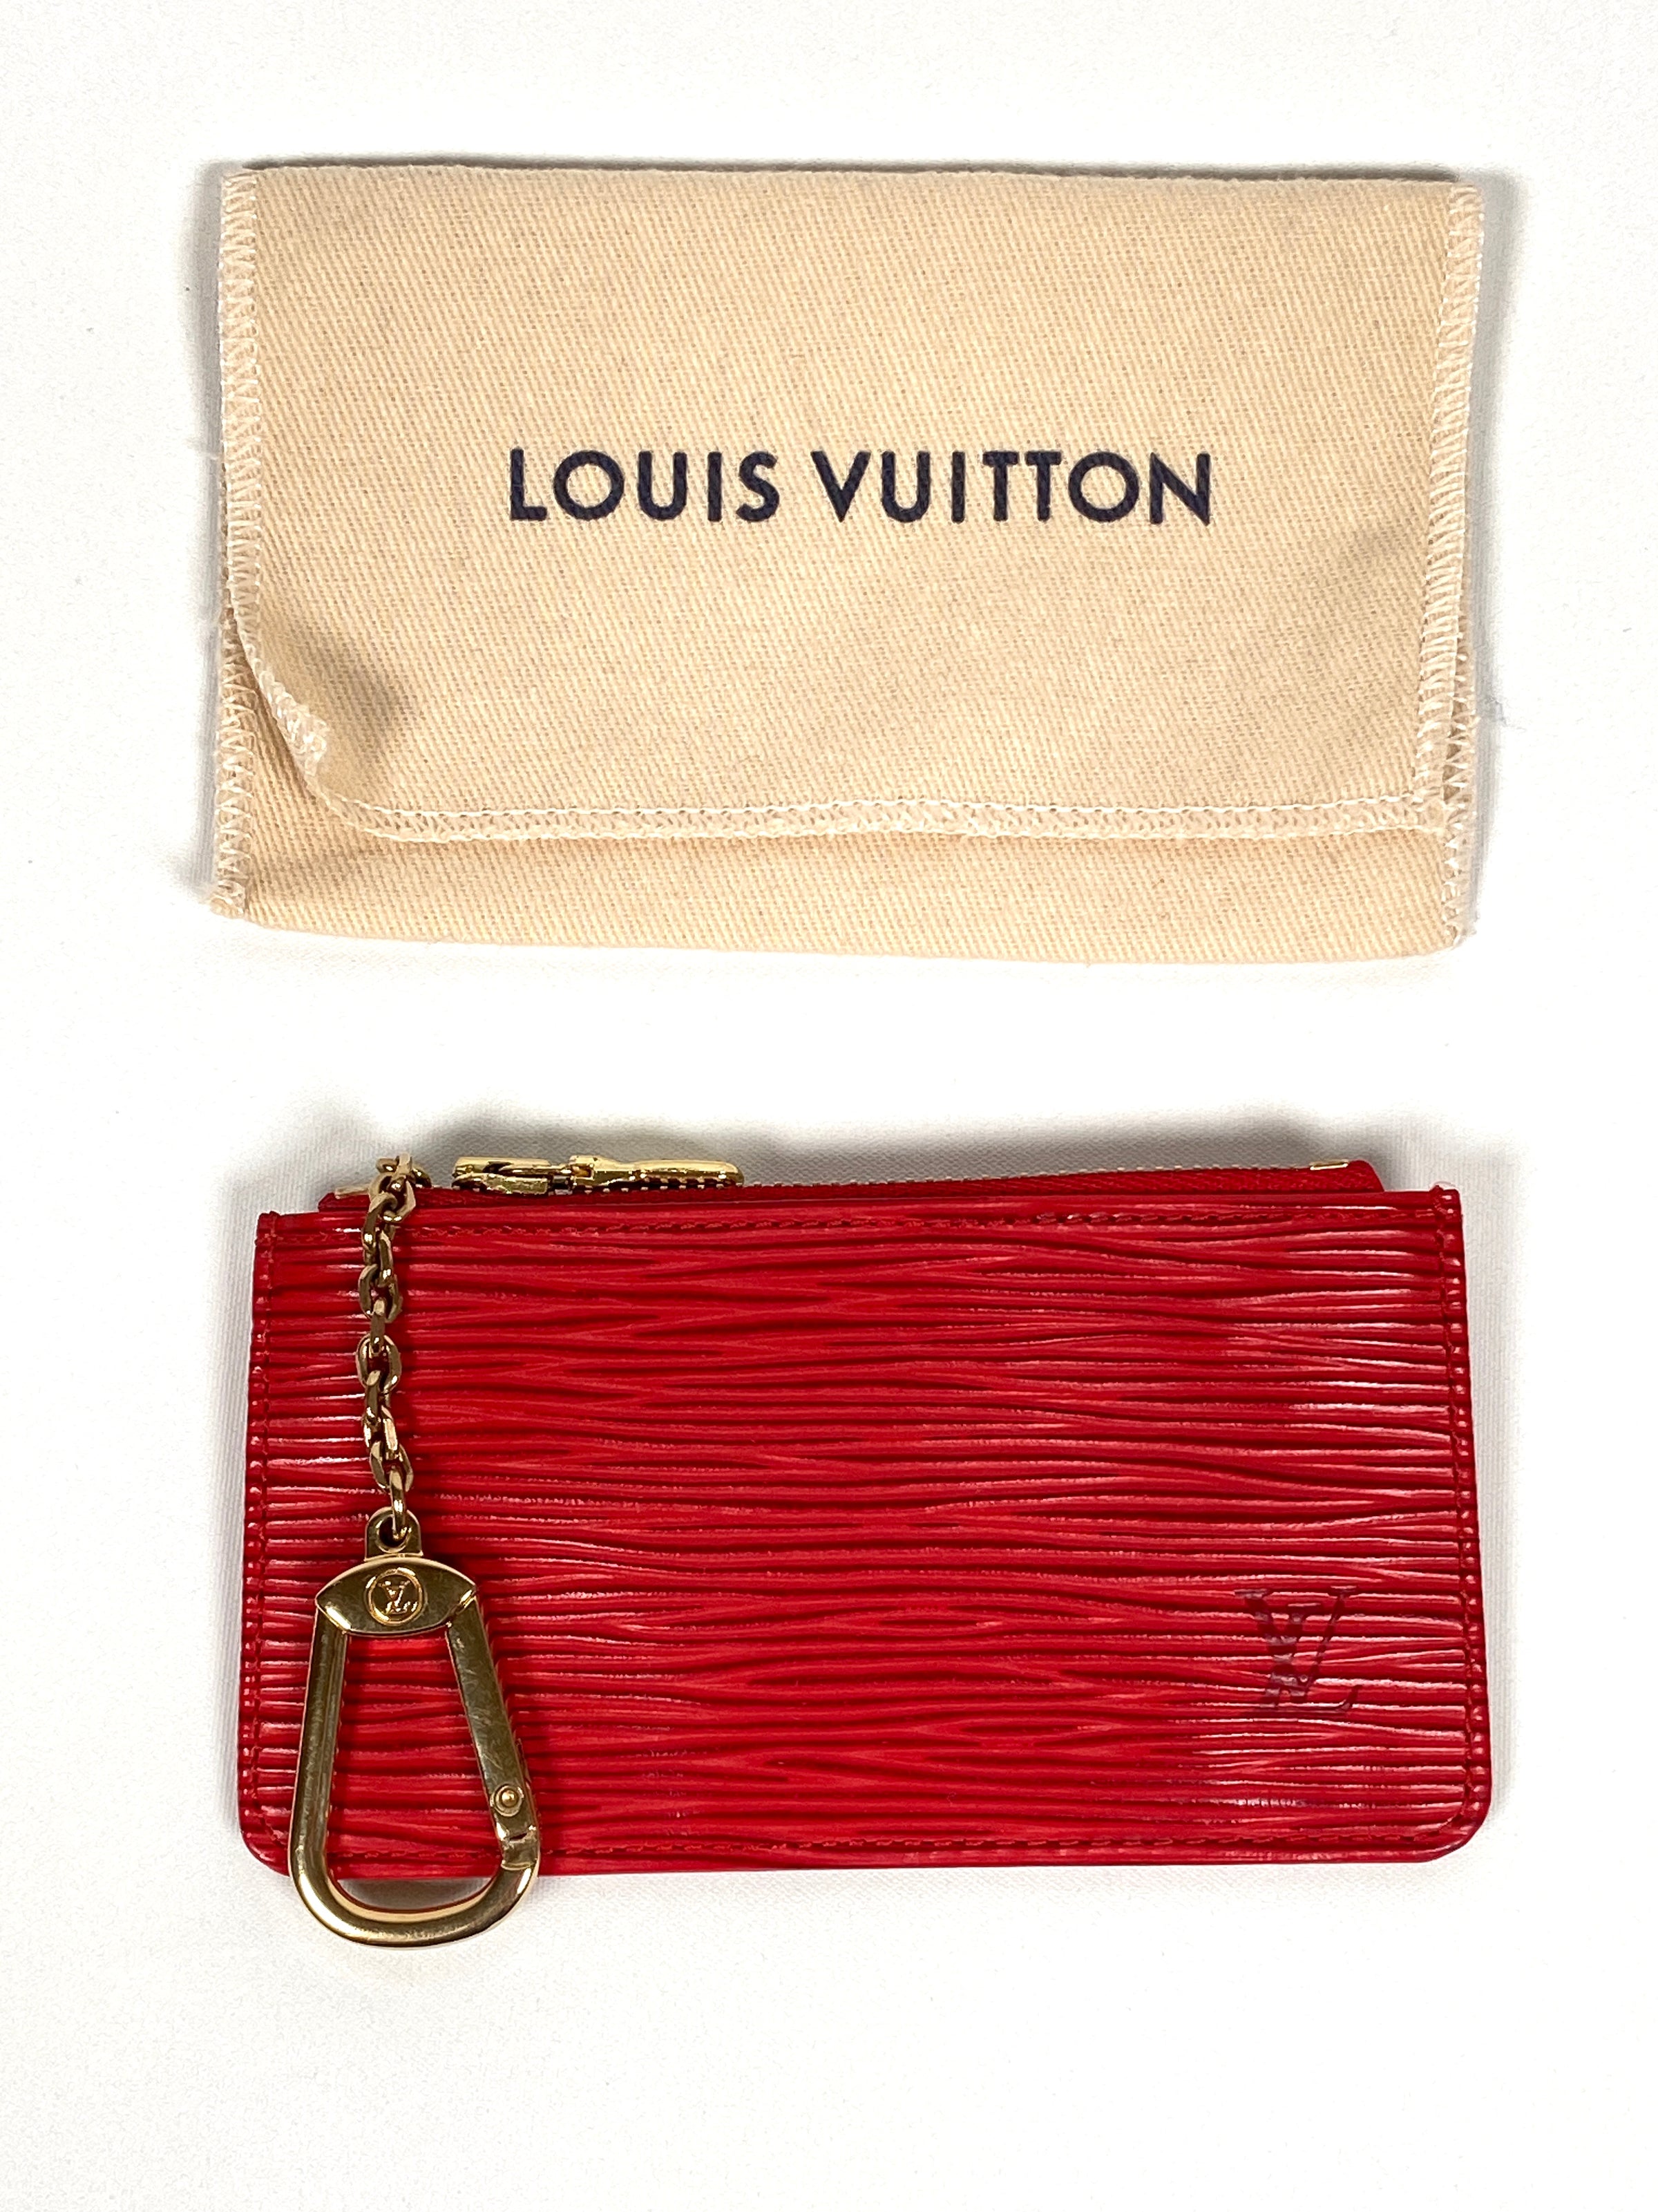 Louis Vuitton Epi Leather Key Holder Case -  Australia